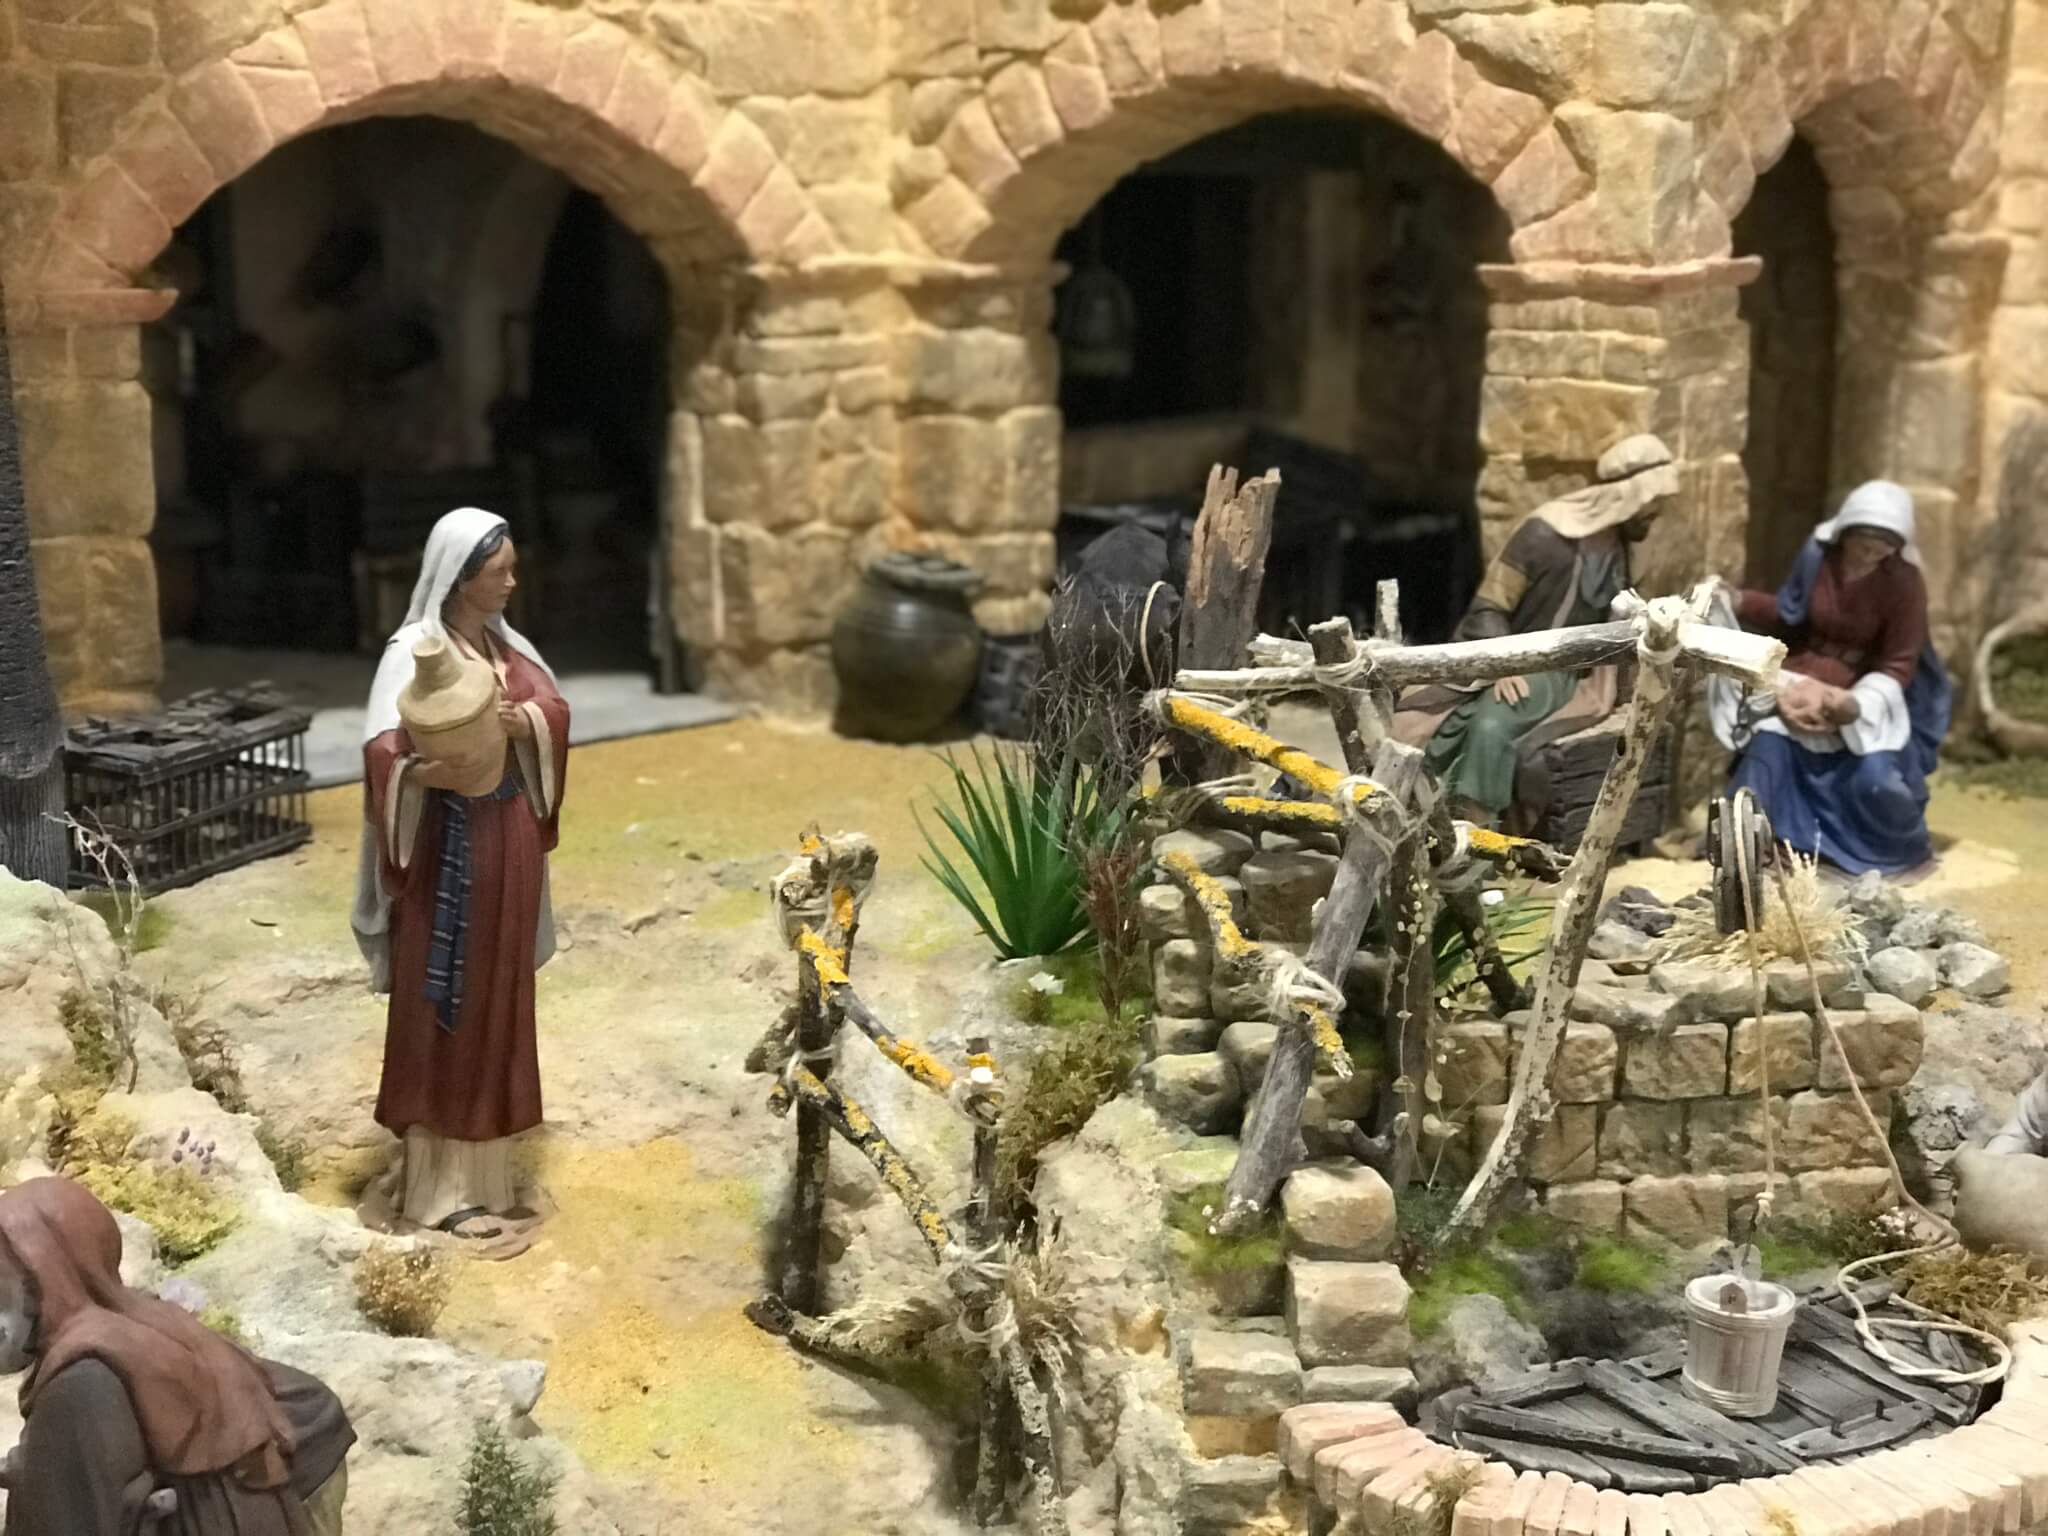 La Navidad llega a Utrera el 4 de Diciembre con el encendido del alumbrado